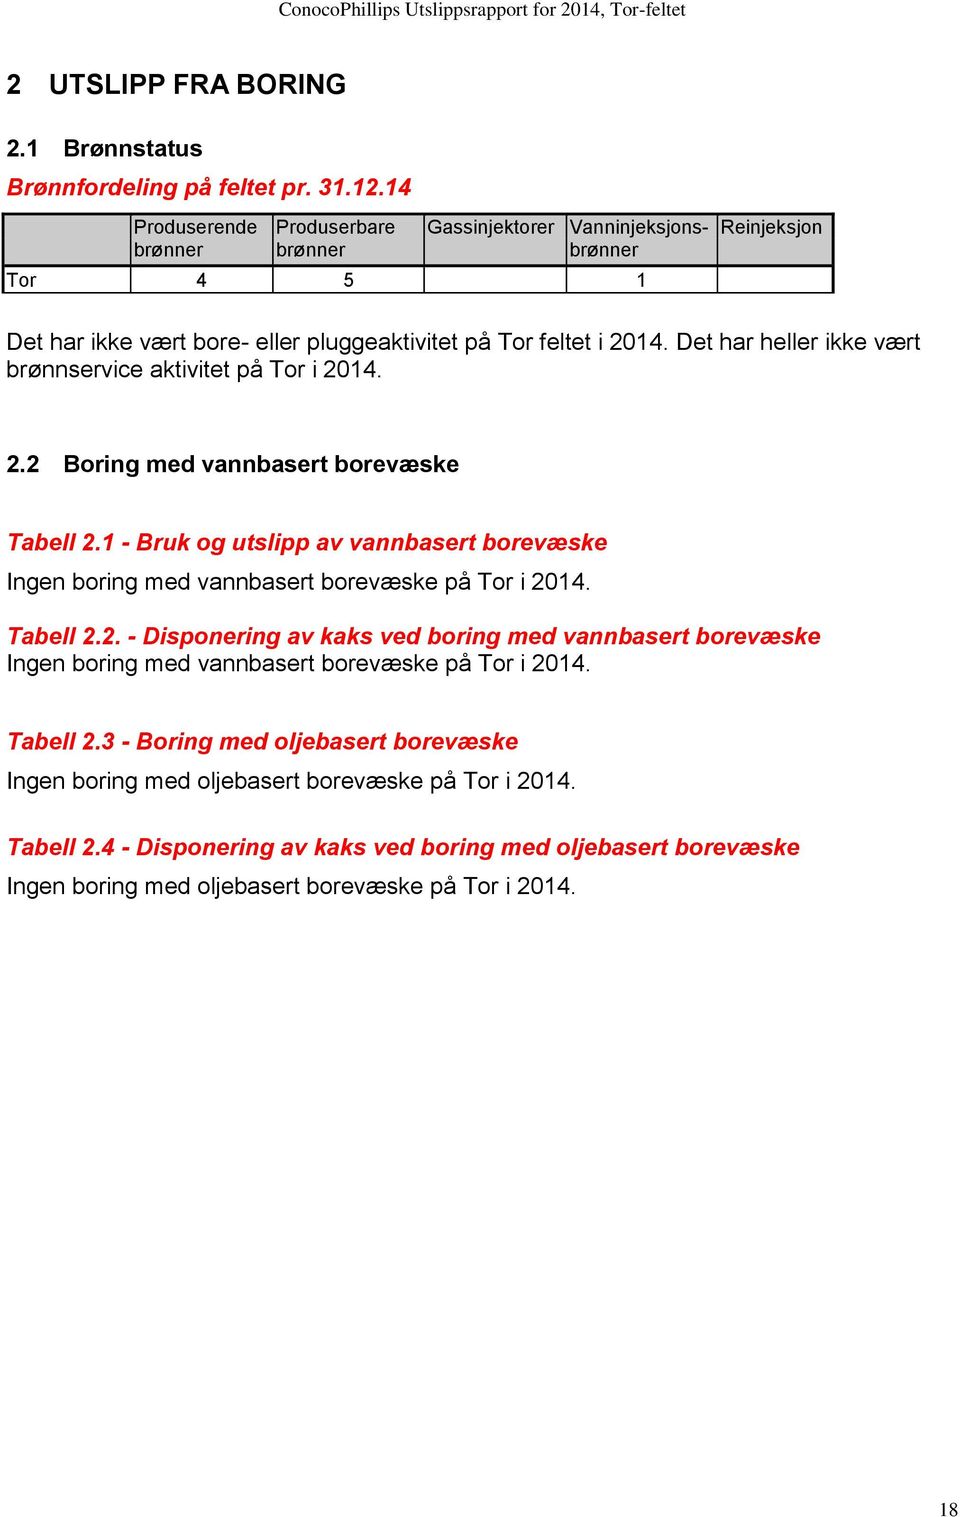 Det har heller ikke vært brønnservice aktivitet på Tor i 2014. 2.2 Boring med vannbasert borevæske Tabell 2.